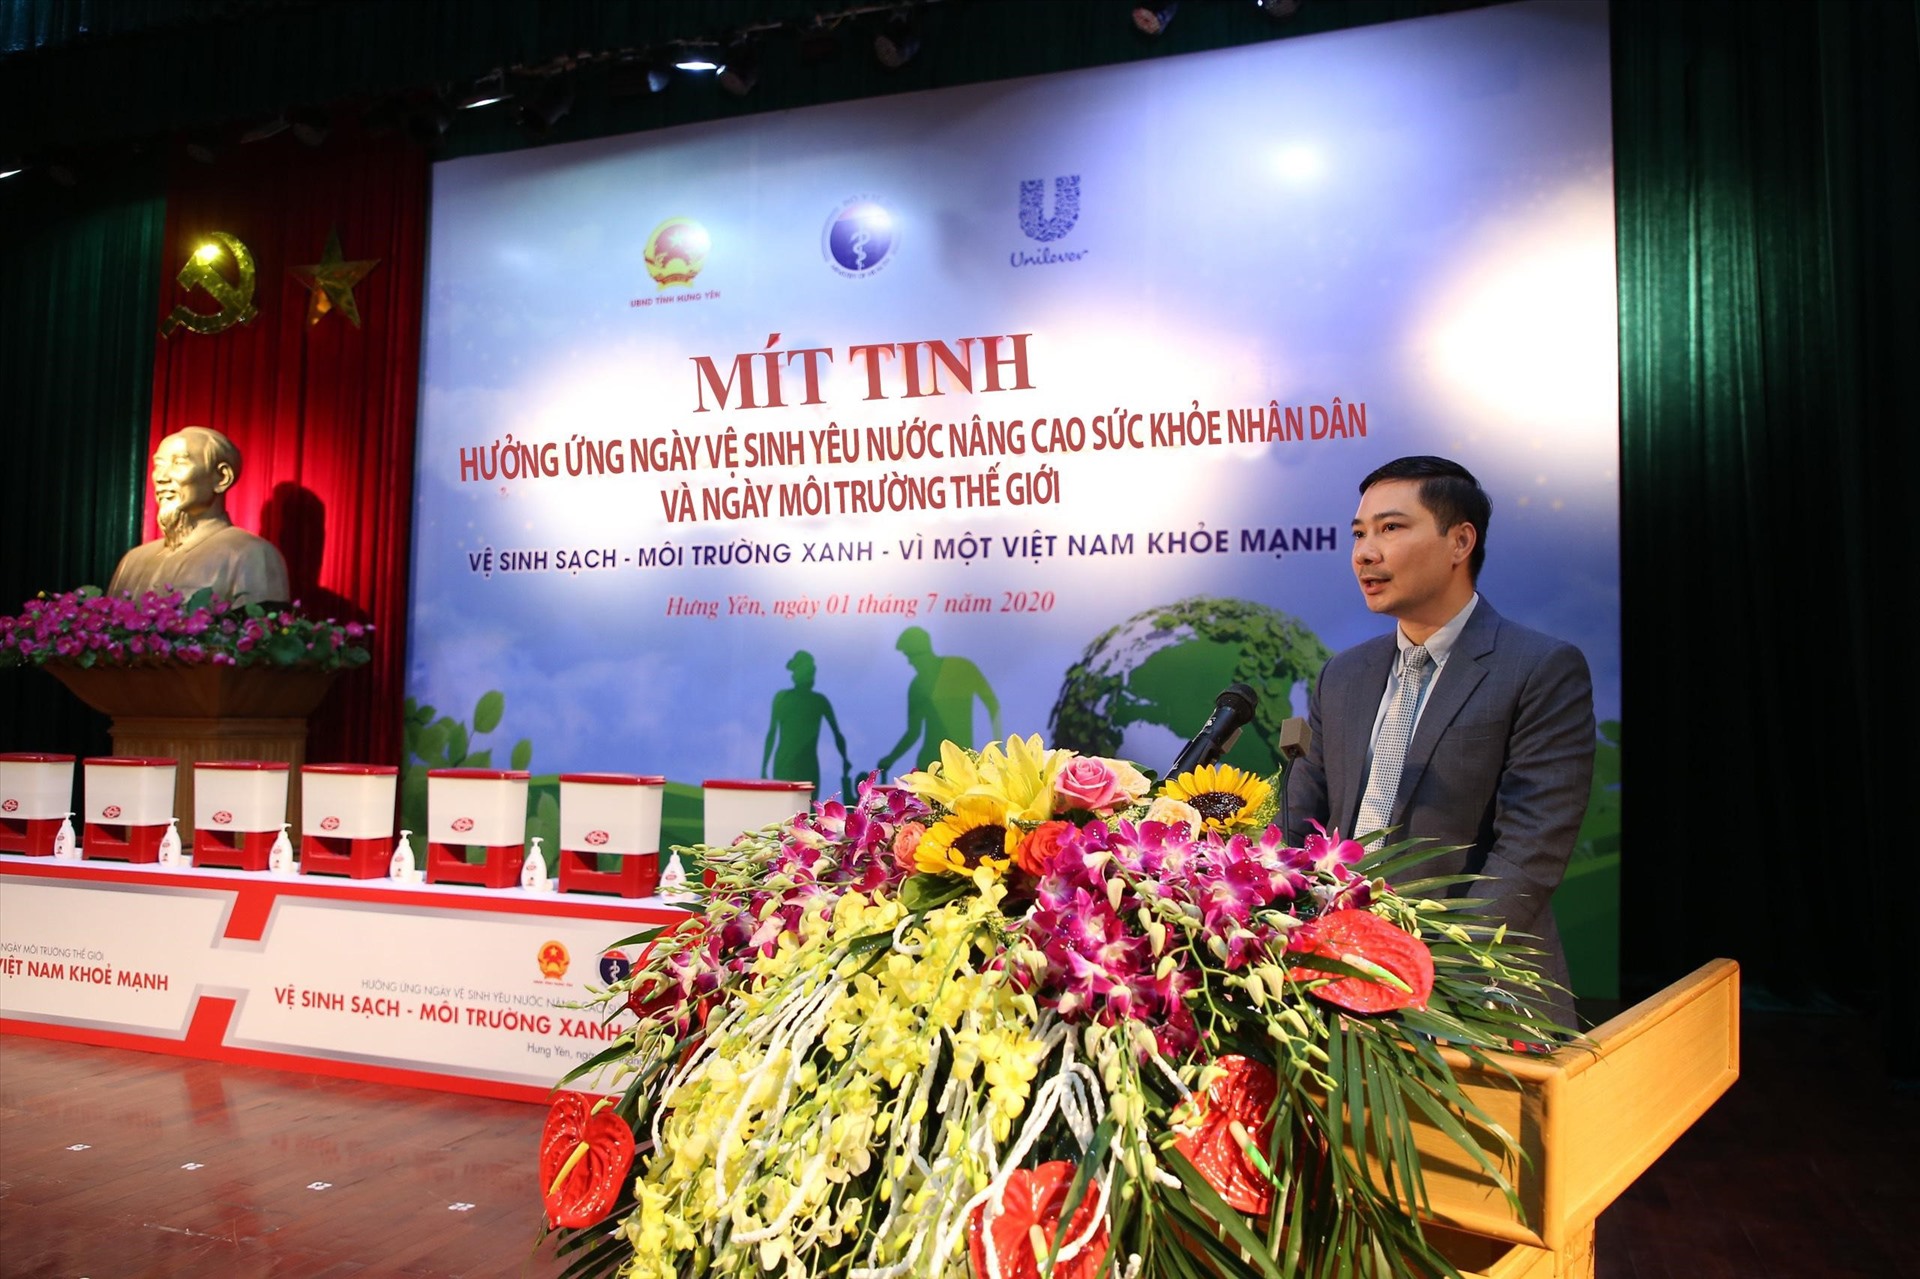 Ông Đỗ Thái Vương – Phó Chủ tịch Phát triển bền vững và Đối ngoại Unilever Việt Nam phát biểu tại buổi mít tinh